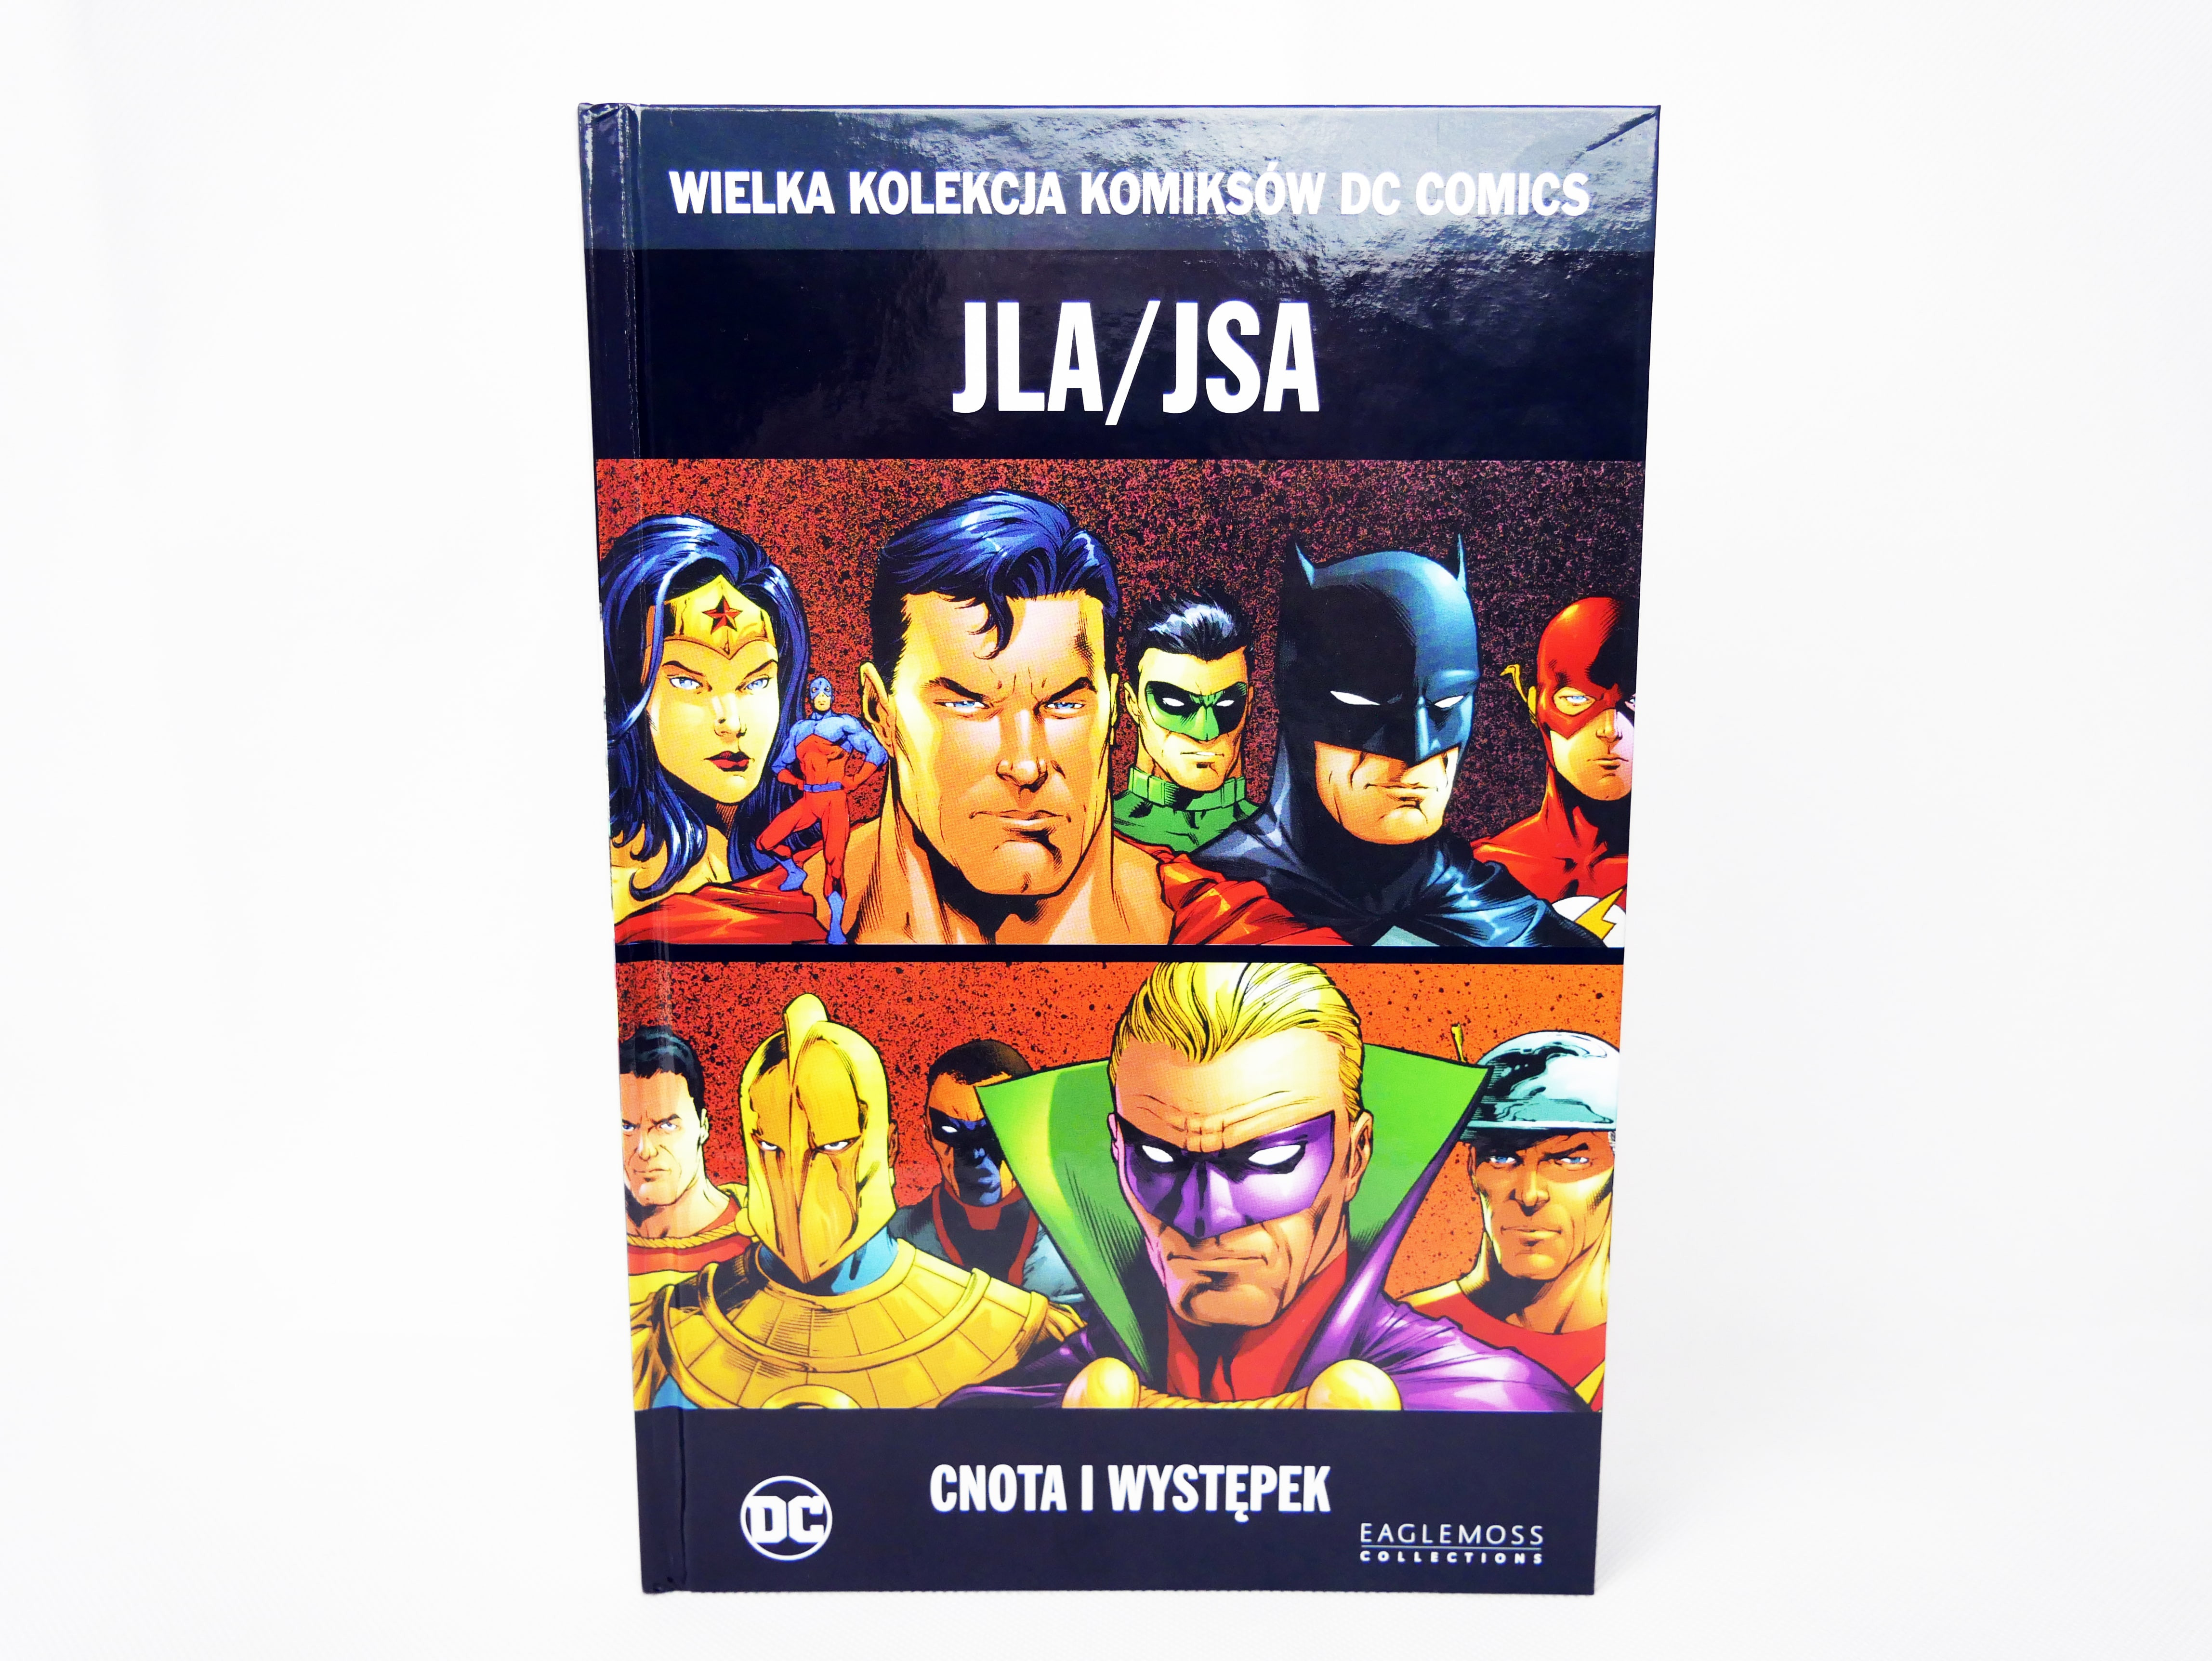 WKKDCC#64: JLA/JSA: Cnota i występek - prezentacja komiksu